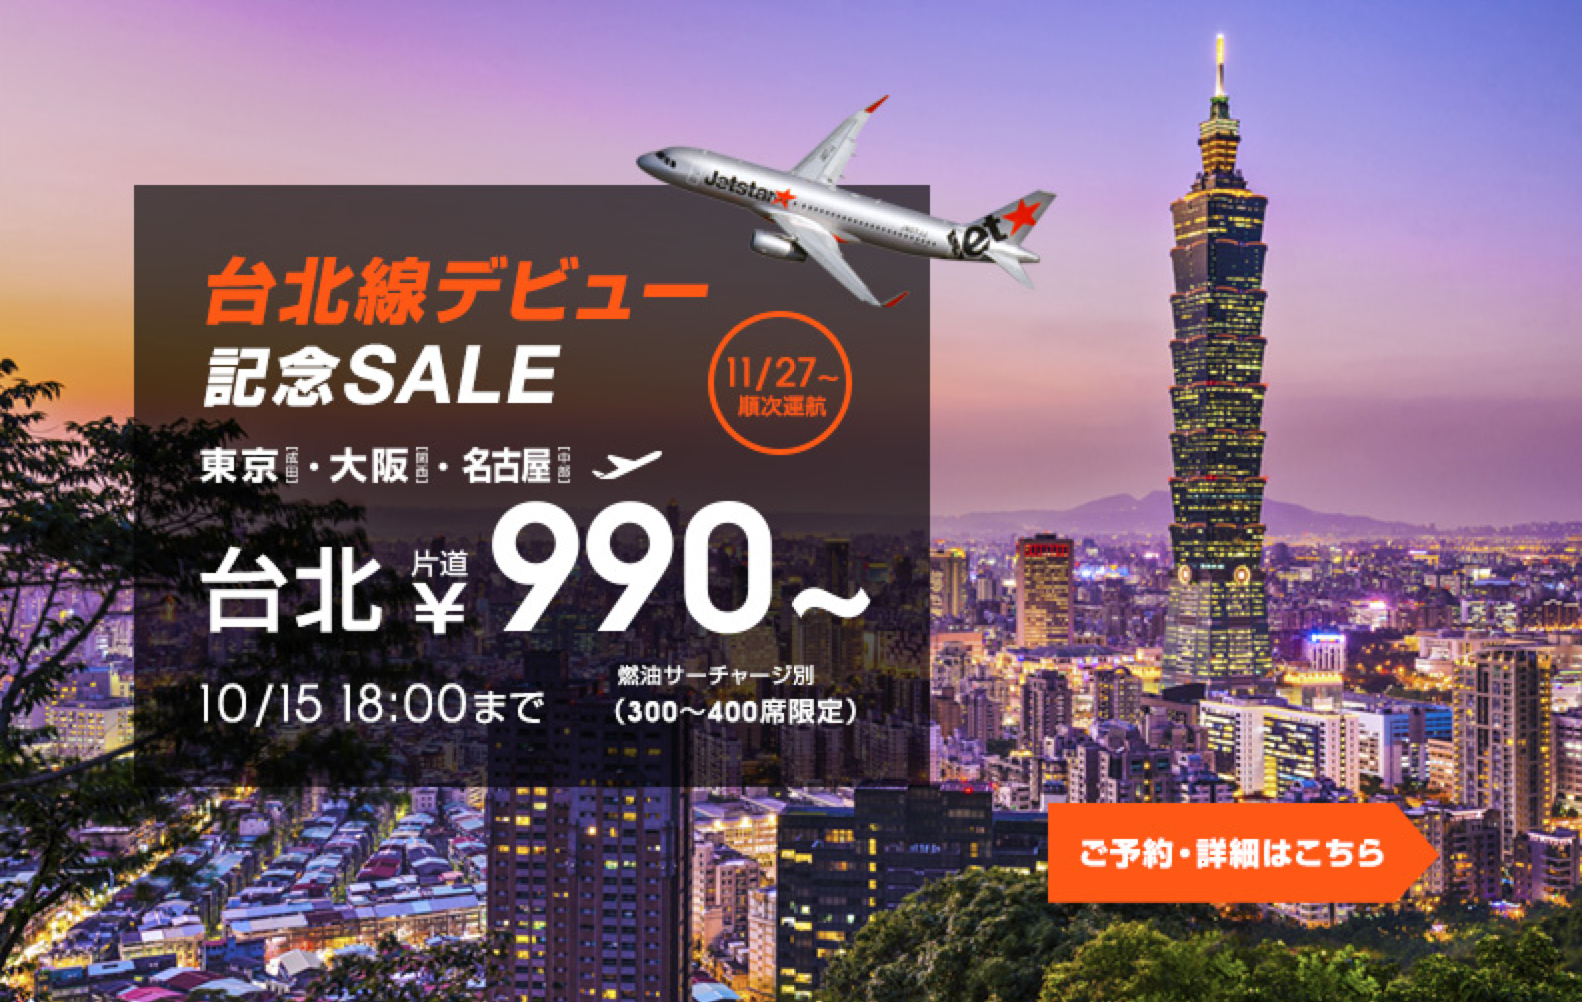 Jetstar ジェットスター 台北線新規就航記念セール 15年10月13日 旅するlcc